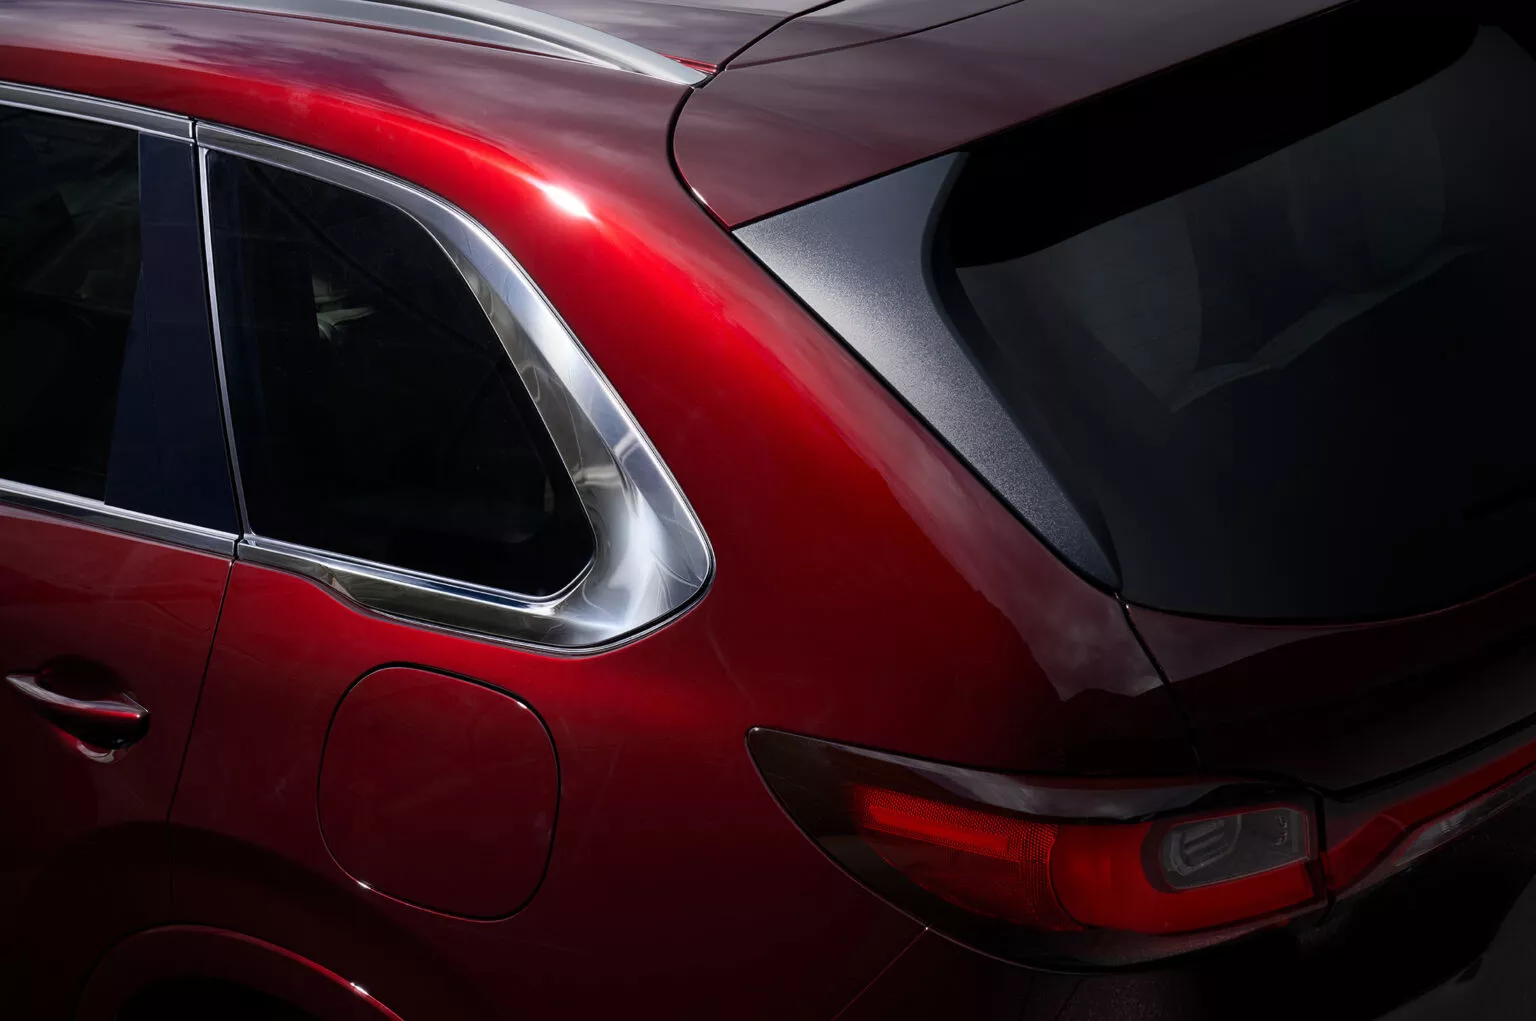 Mazda CX-80 tung ảnh ‘nhá hàng’, ra mắt vào ngày 18/4 mazda-cx-80-teaser-1-1536x1021.webp